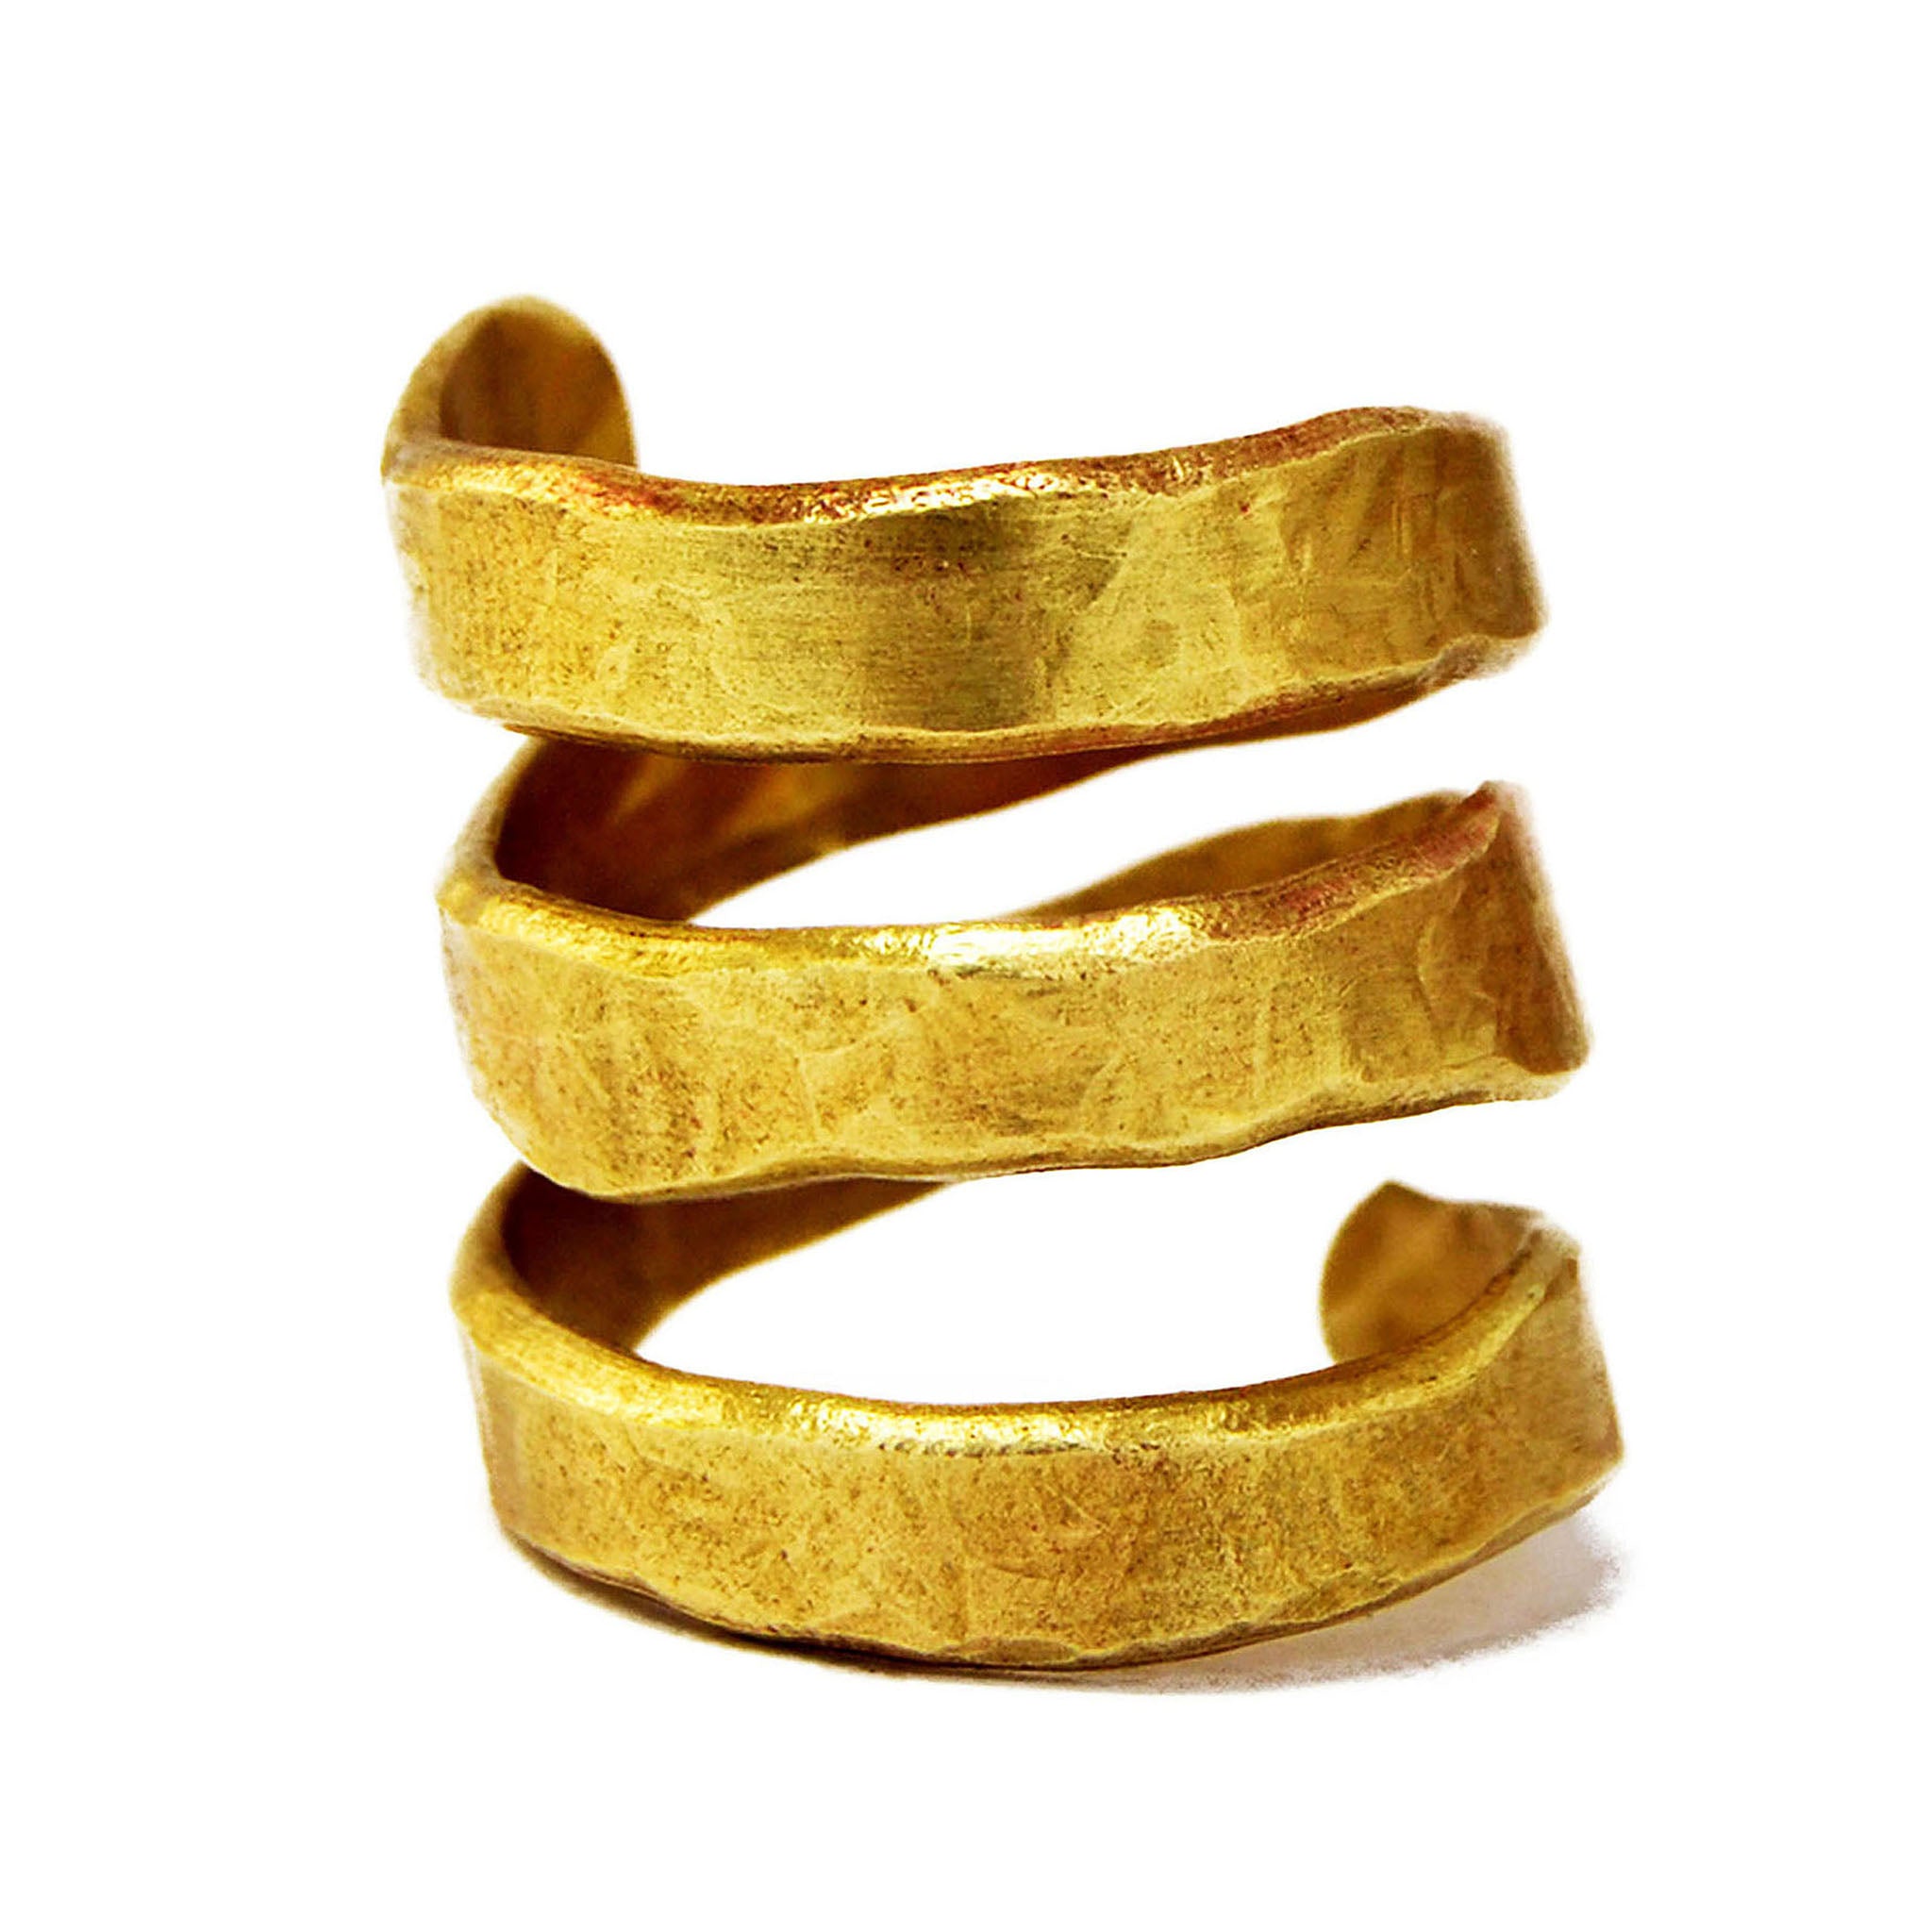 Spiral brass ring